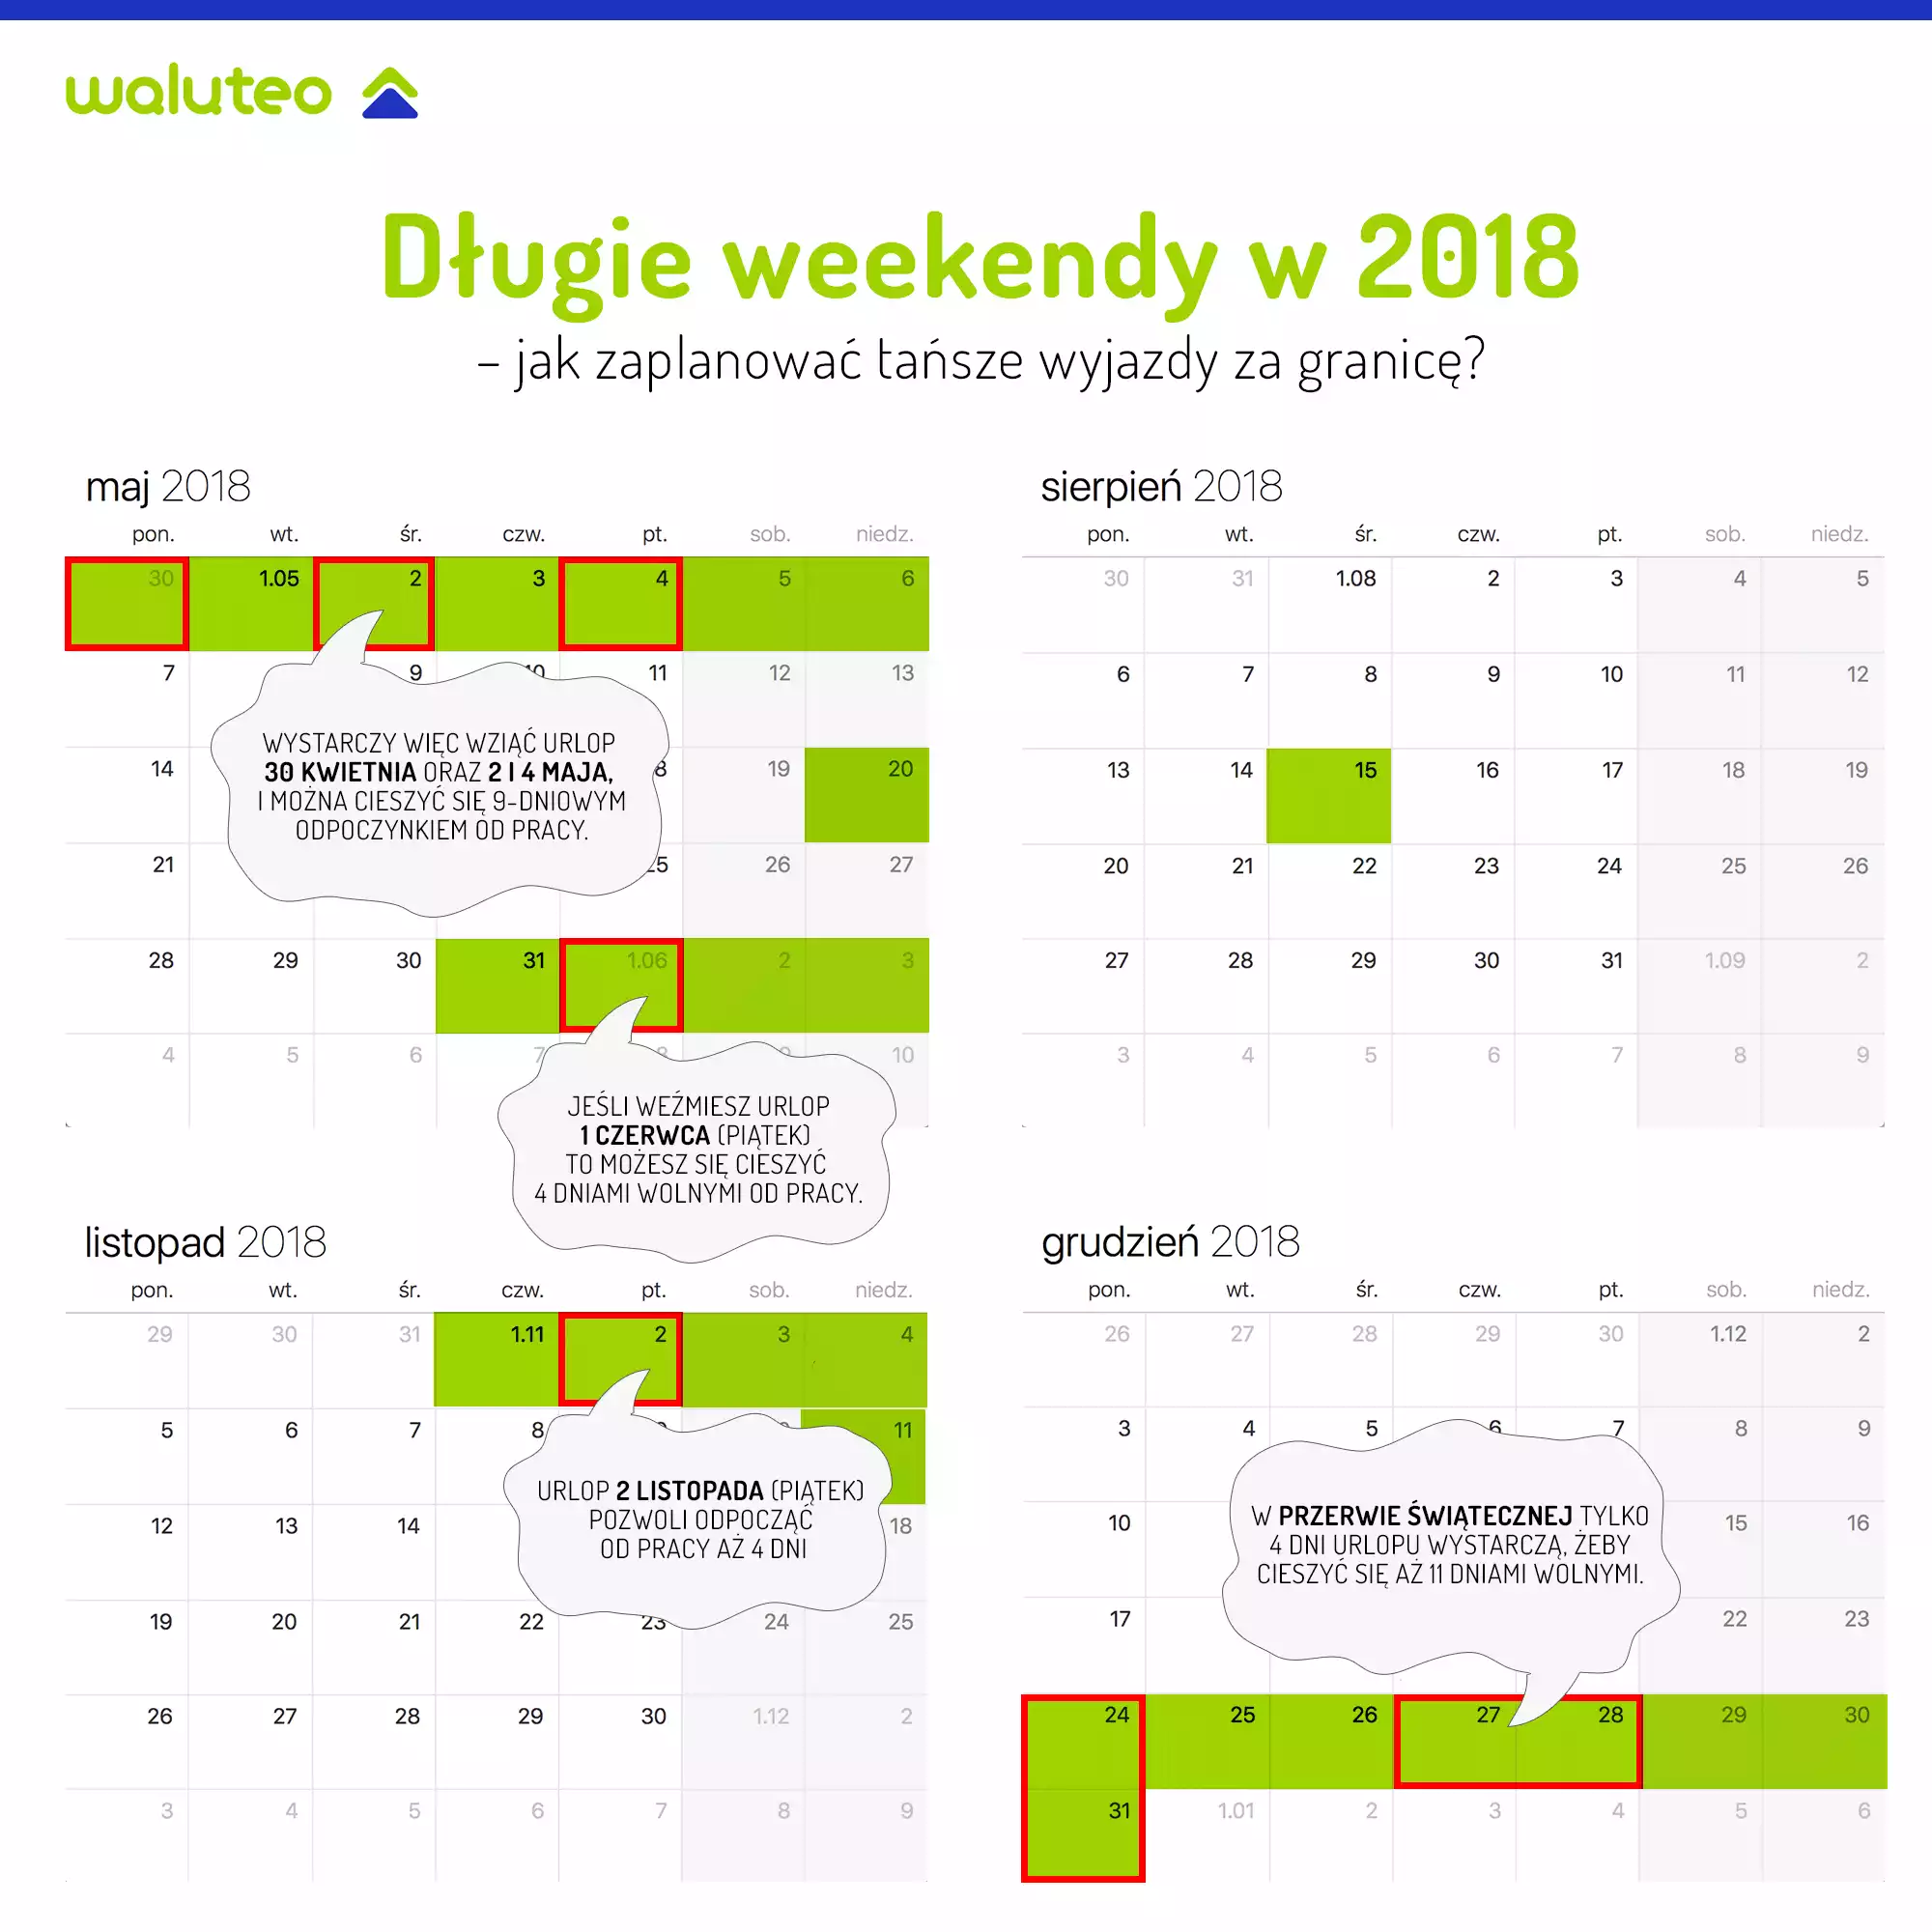 Długie weekendy w 2018 roku - kalendarz